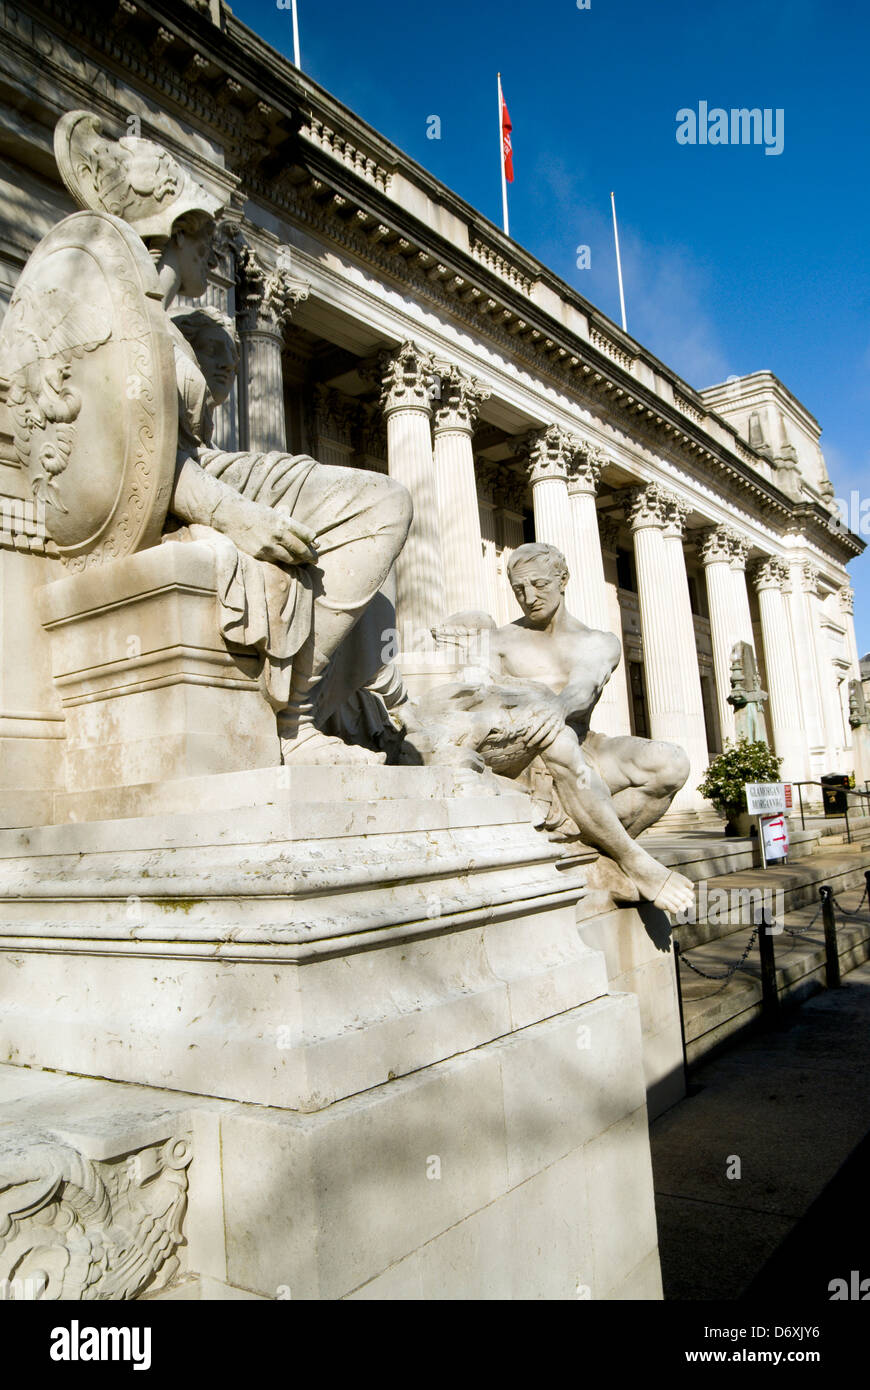 Détail de la sculpture classique 'Mining' par Albert Hodge 1912 Bâtiment de l'université de Cardiff au Pays de Galles cardiff cathays park Banque D'Images